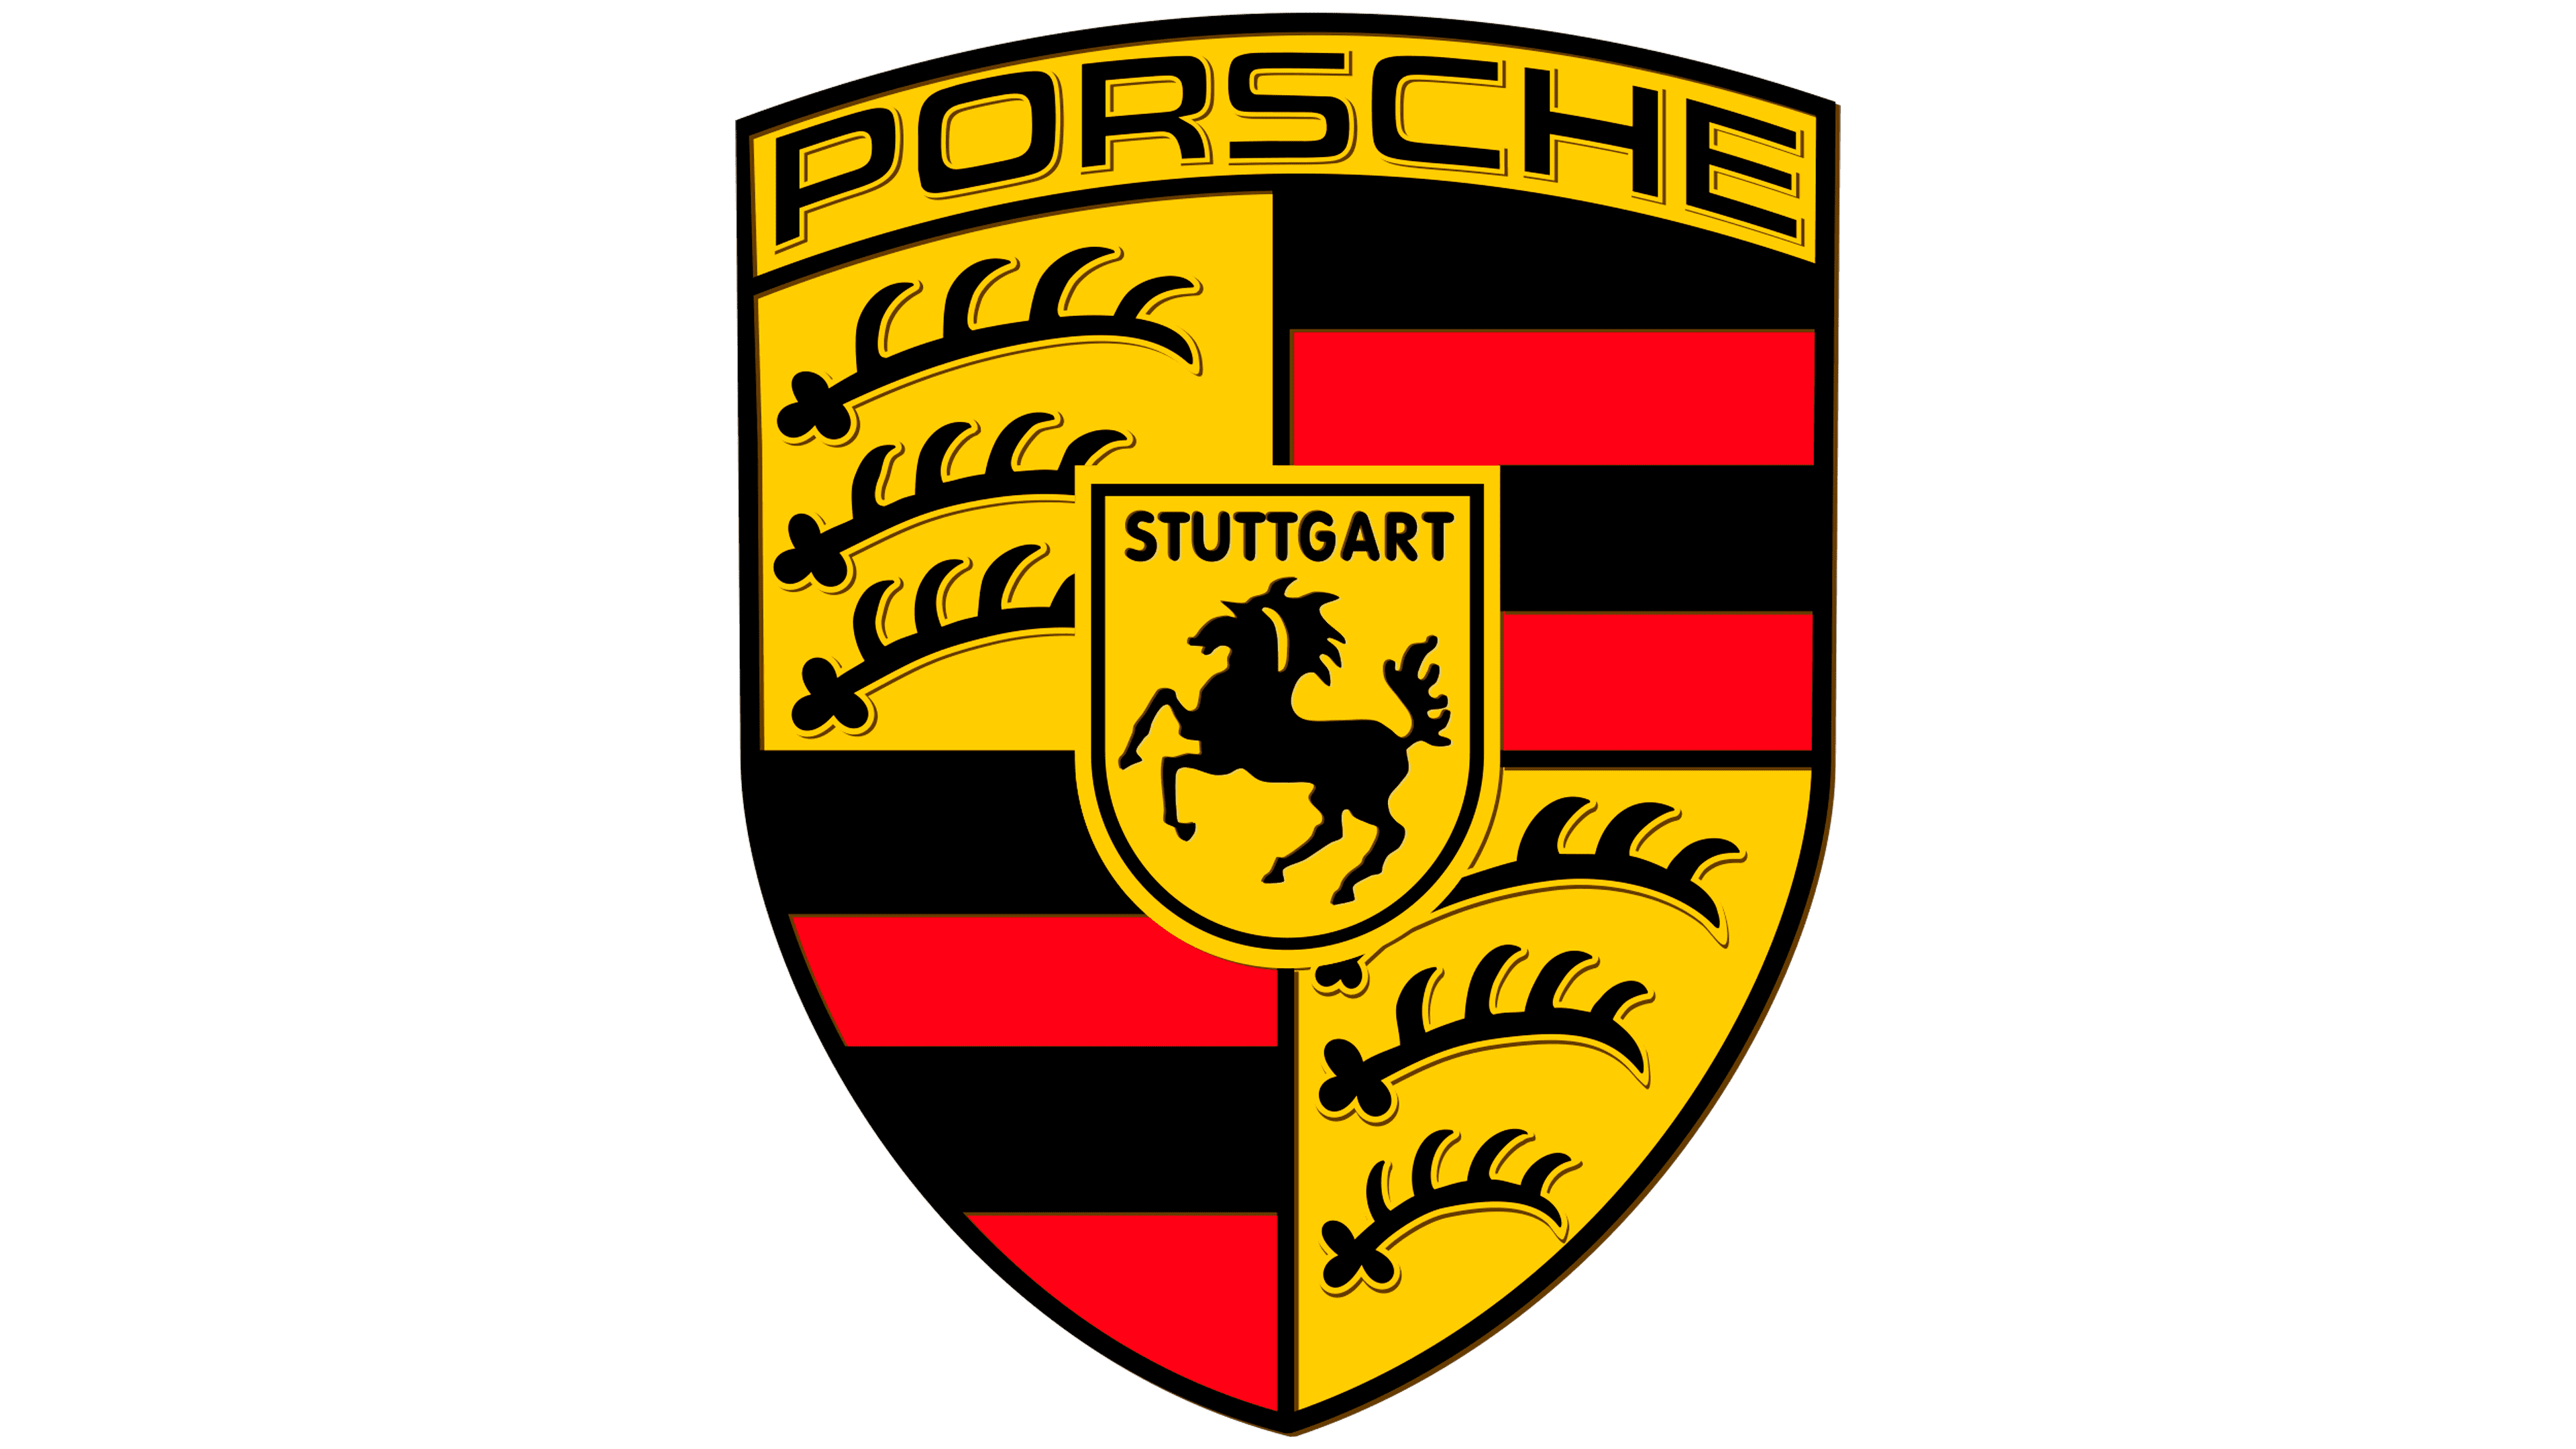 Porsche wrapping